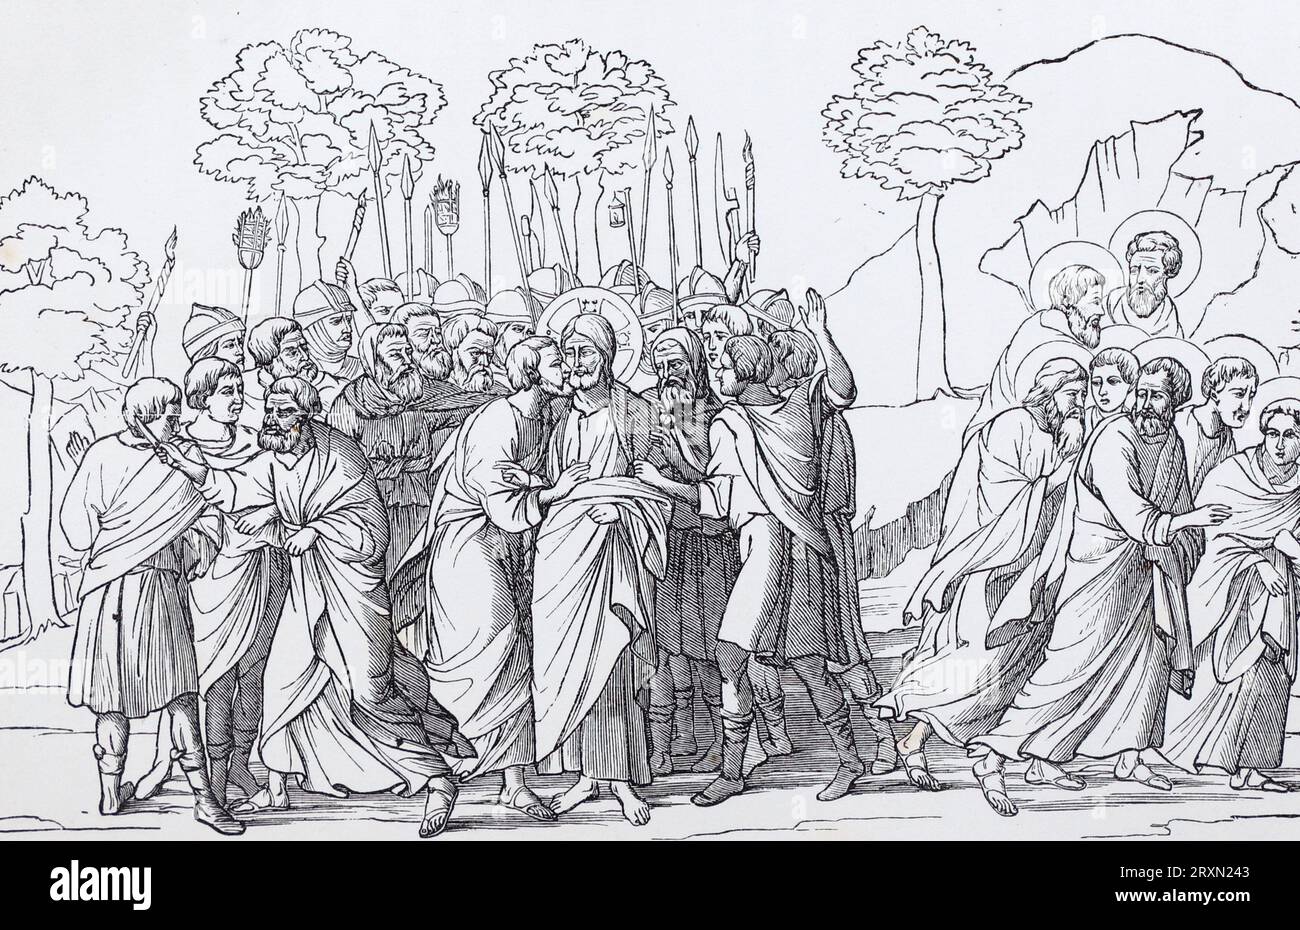 Il tradimento di Gesù, San Pietro che taglia l'orecchio di Malco, e i discepoli scappano. Dopo un dipinto del XVI secolo di Duccio di Buoninsegna. Incisione da vite dei Santi di Sabin Baring-Gould pubblicata nel 1897. Foto Stock